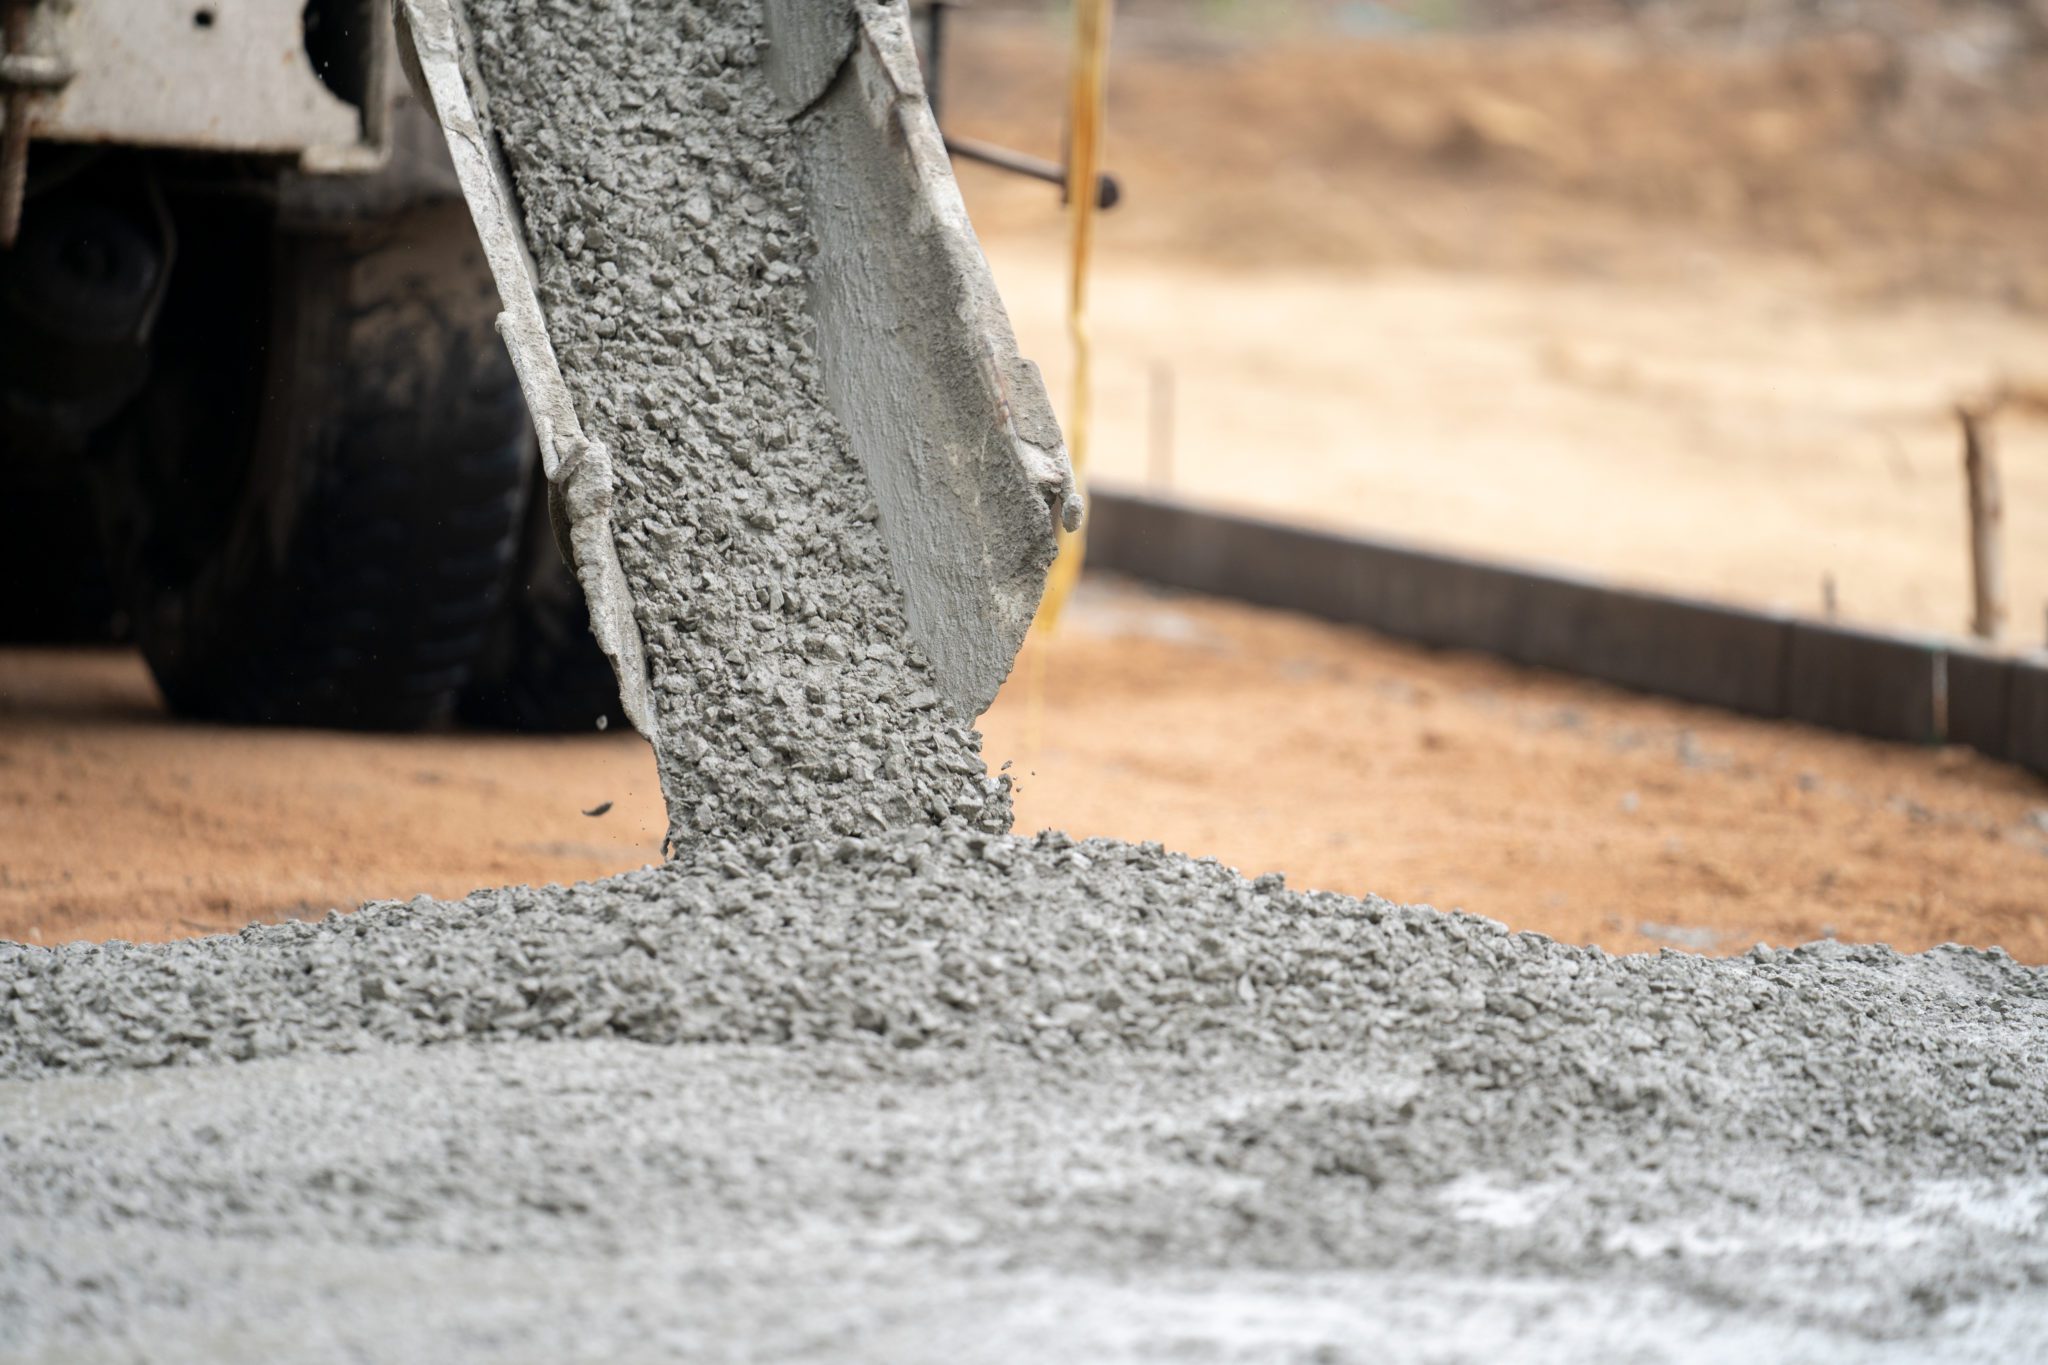 construction-worker-pouring-wet-concret-road-construction-site (2)